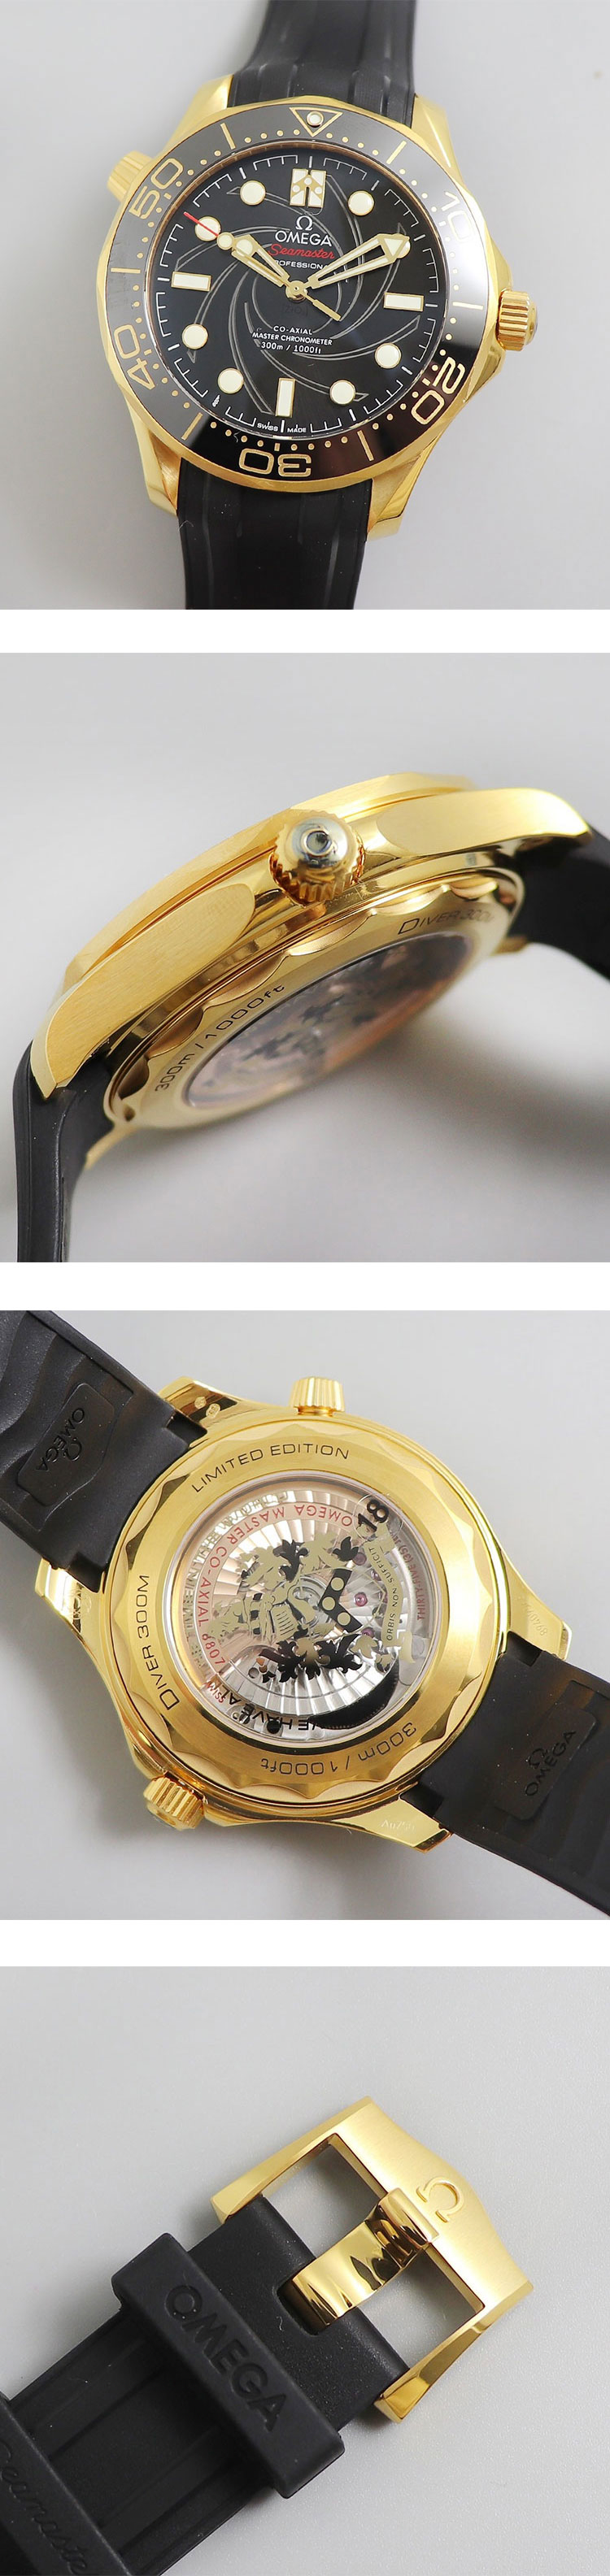 ブランドオメガ時計コピー シーマスター ダイバー 300M ジェームズ・ボンド セット 210.62.42.20.01.001